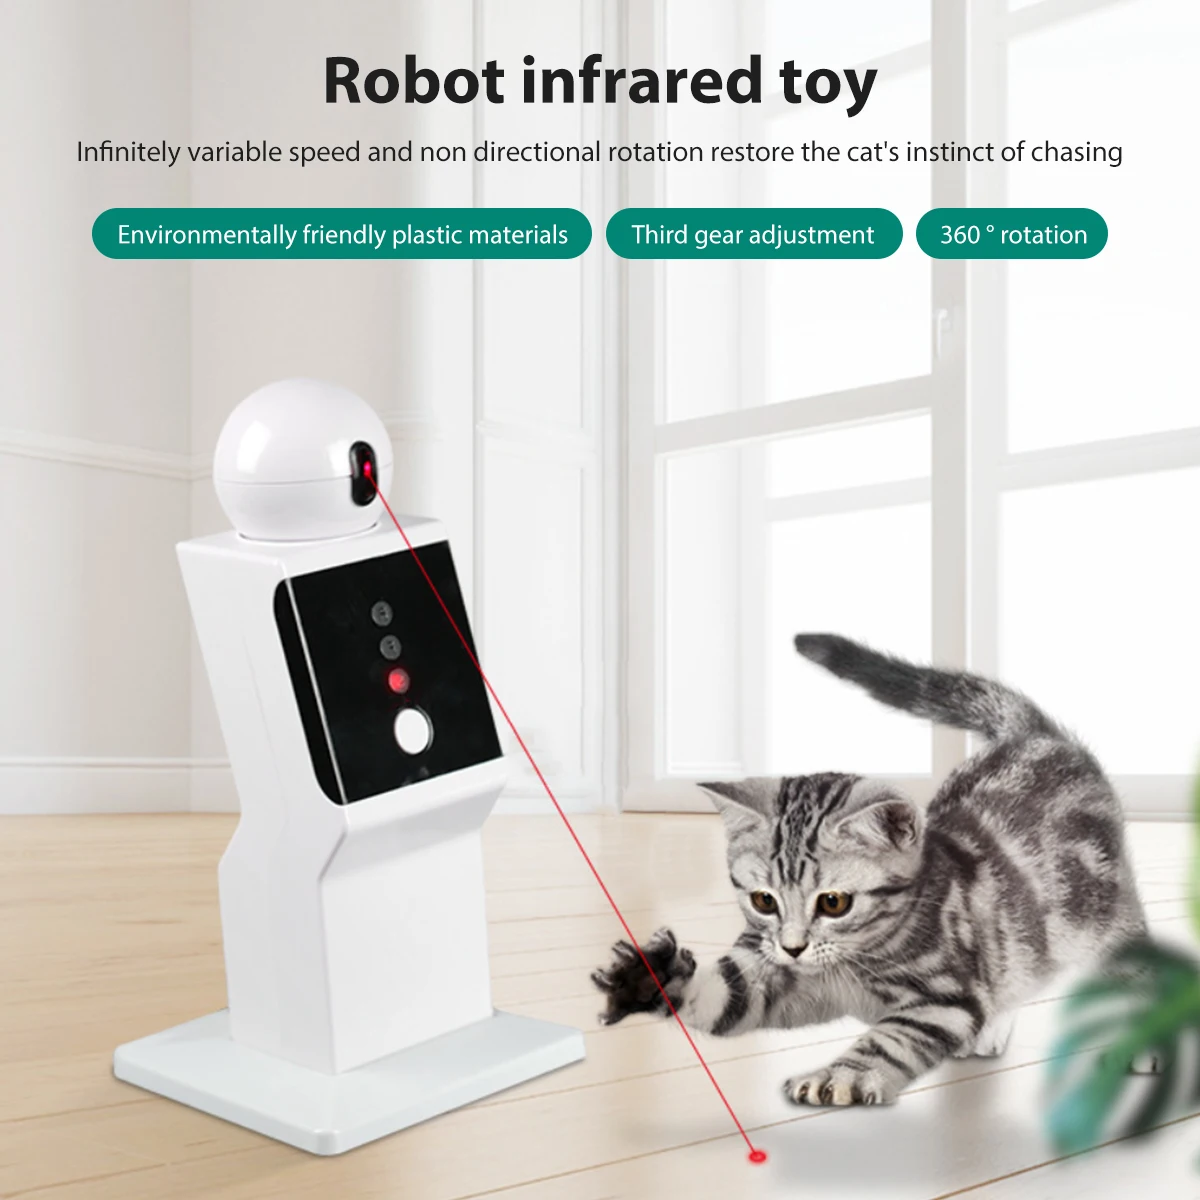 

L кошачья интерактивная игрушка Автоматическая игрушка в виде кошки с 3 точками и таймером, вращающаяся на 360 градусов игрушка для тренировк...